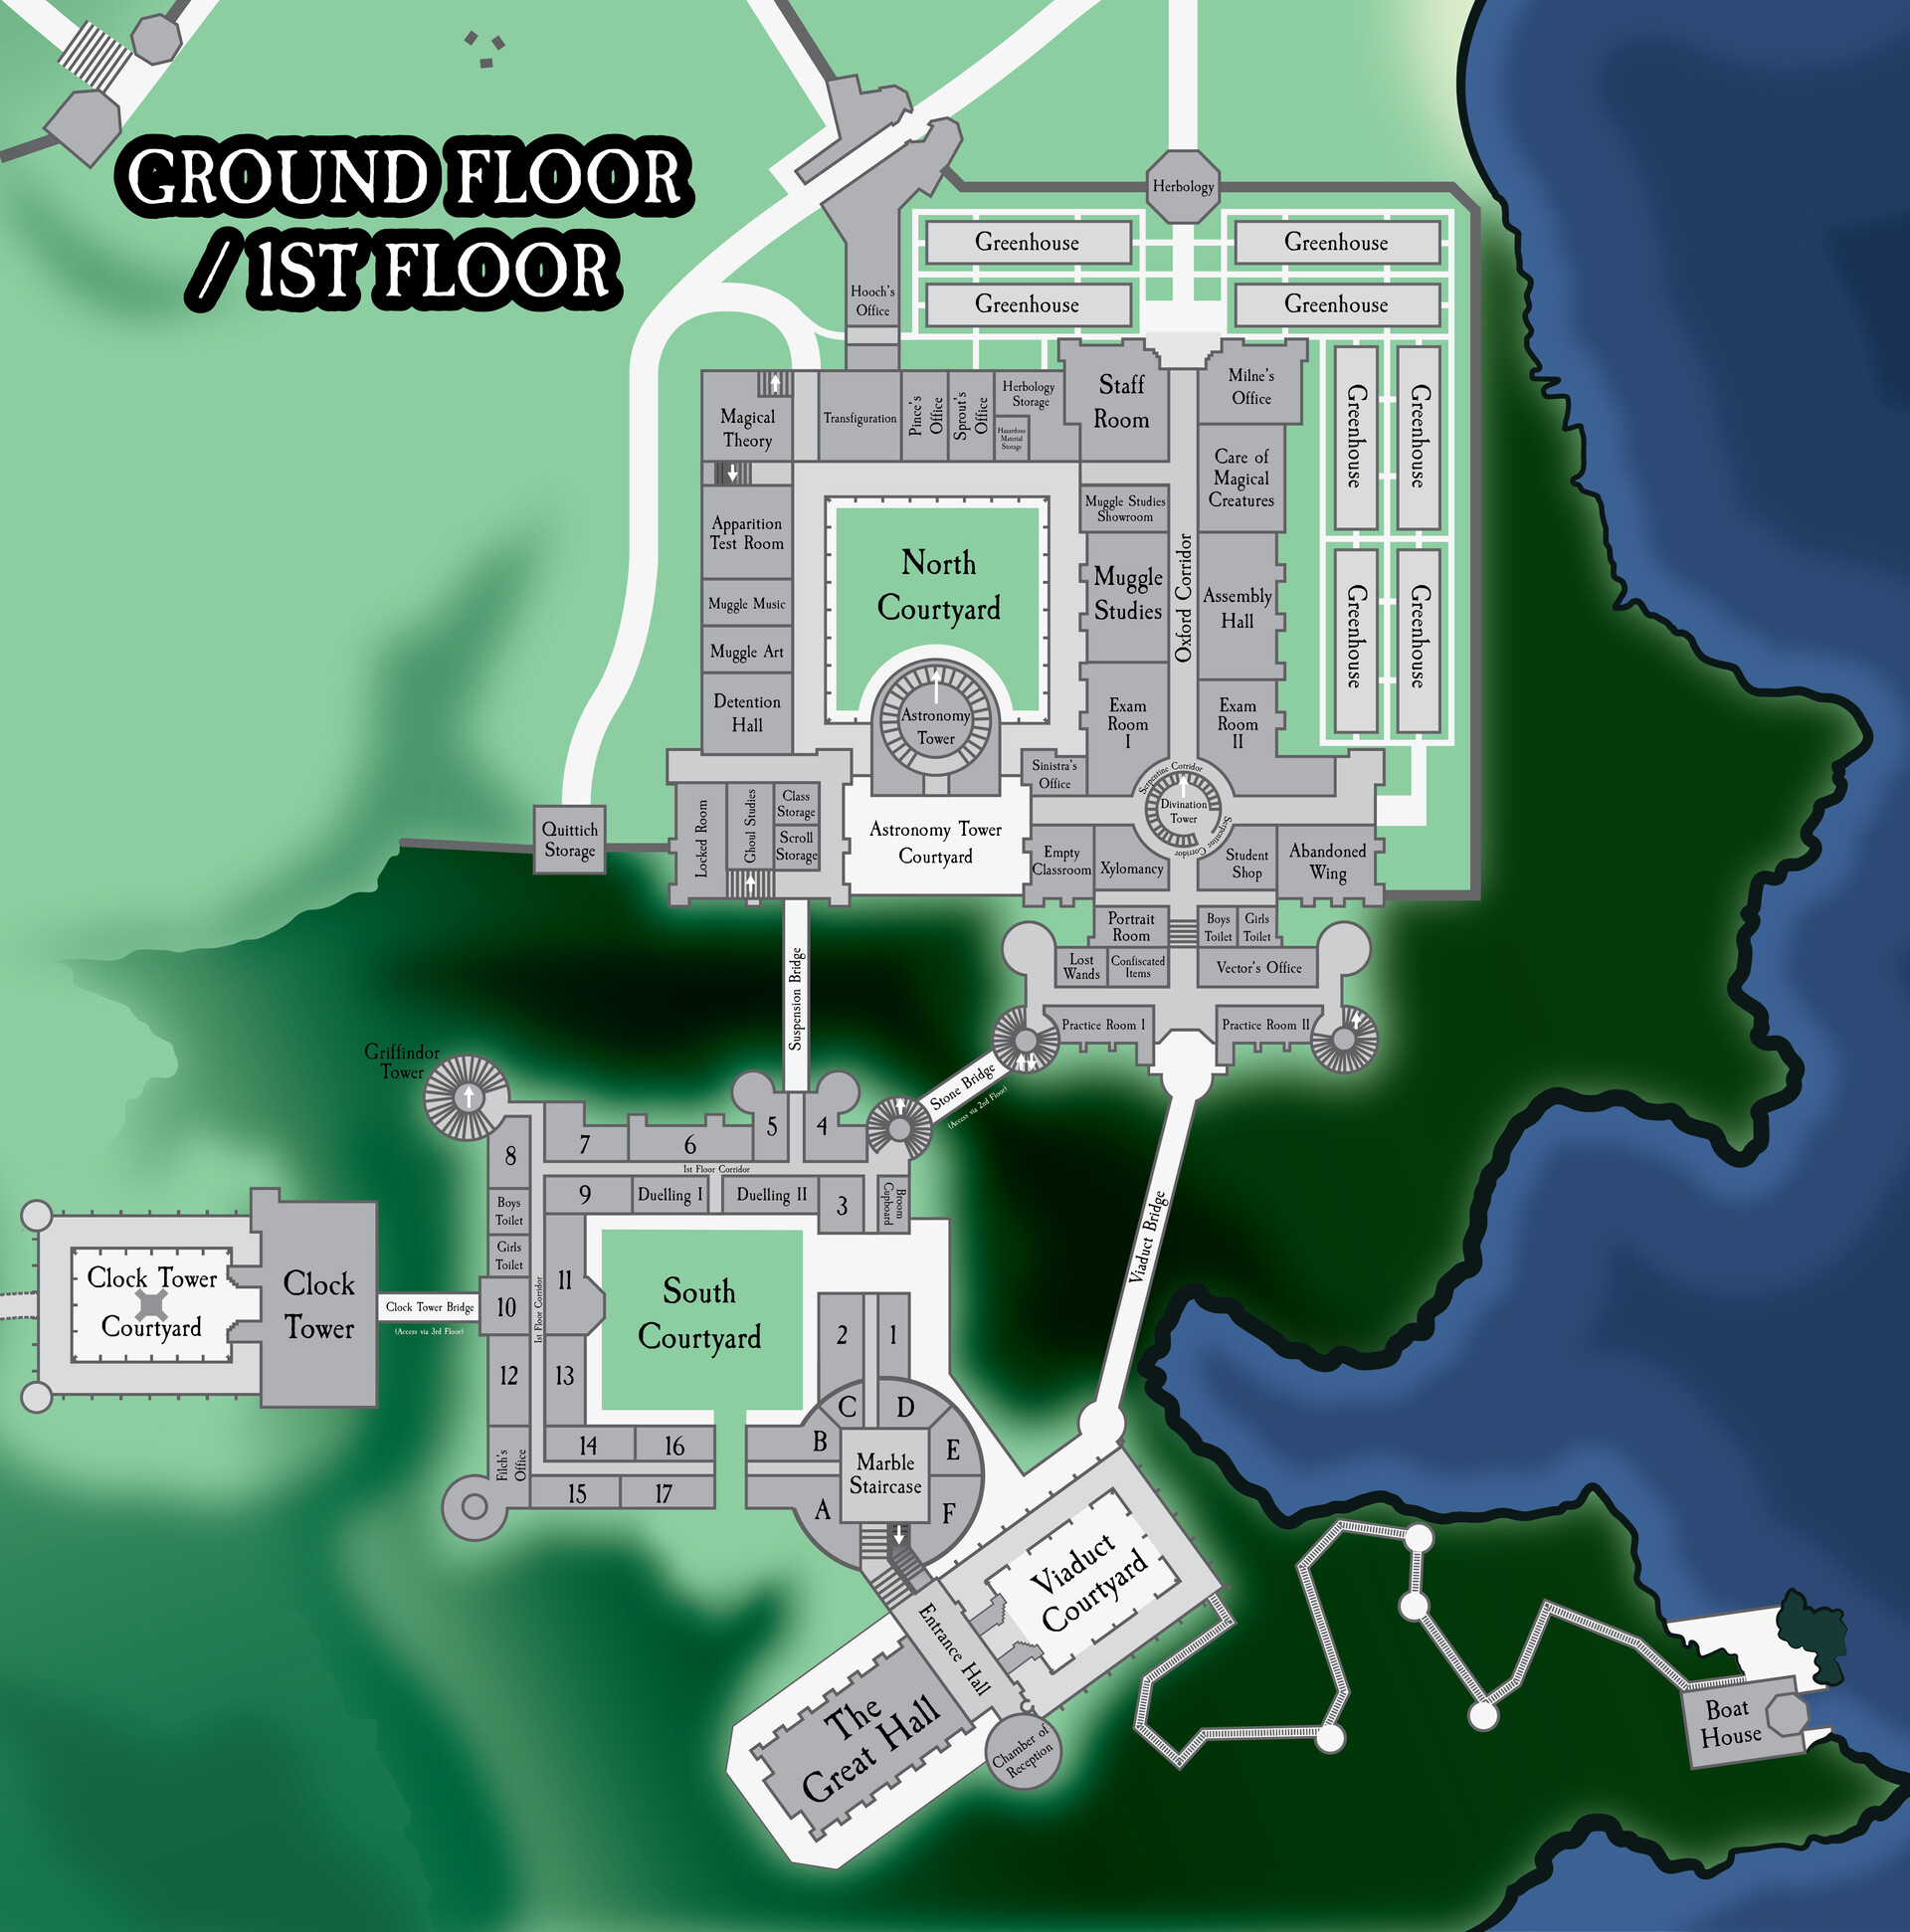 Hogwarts School Map